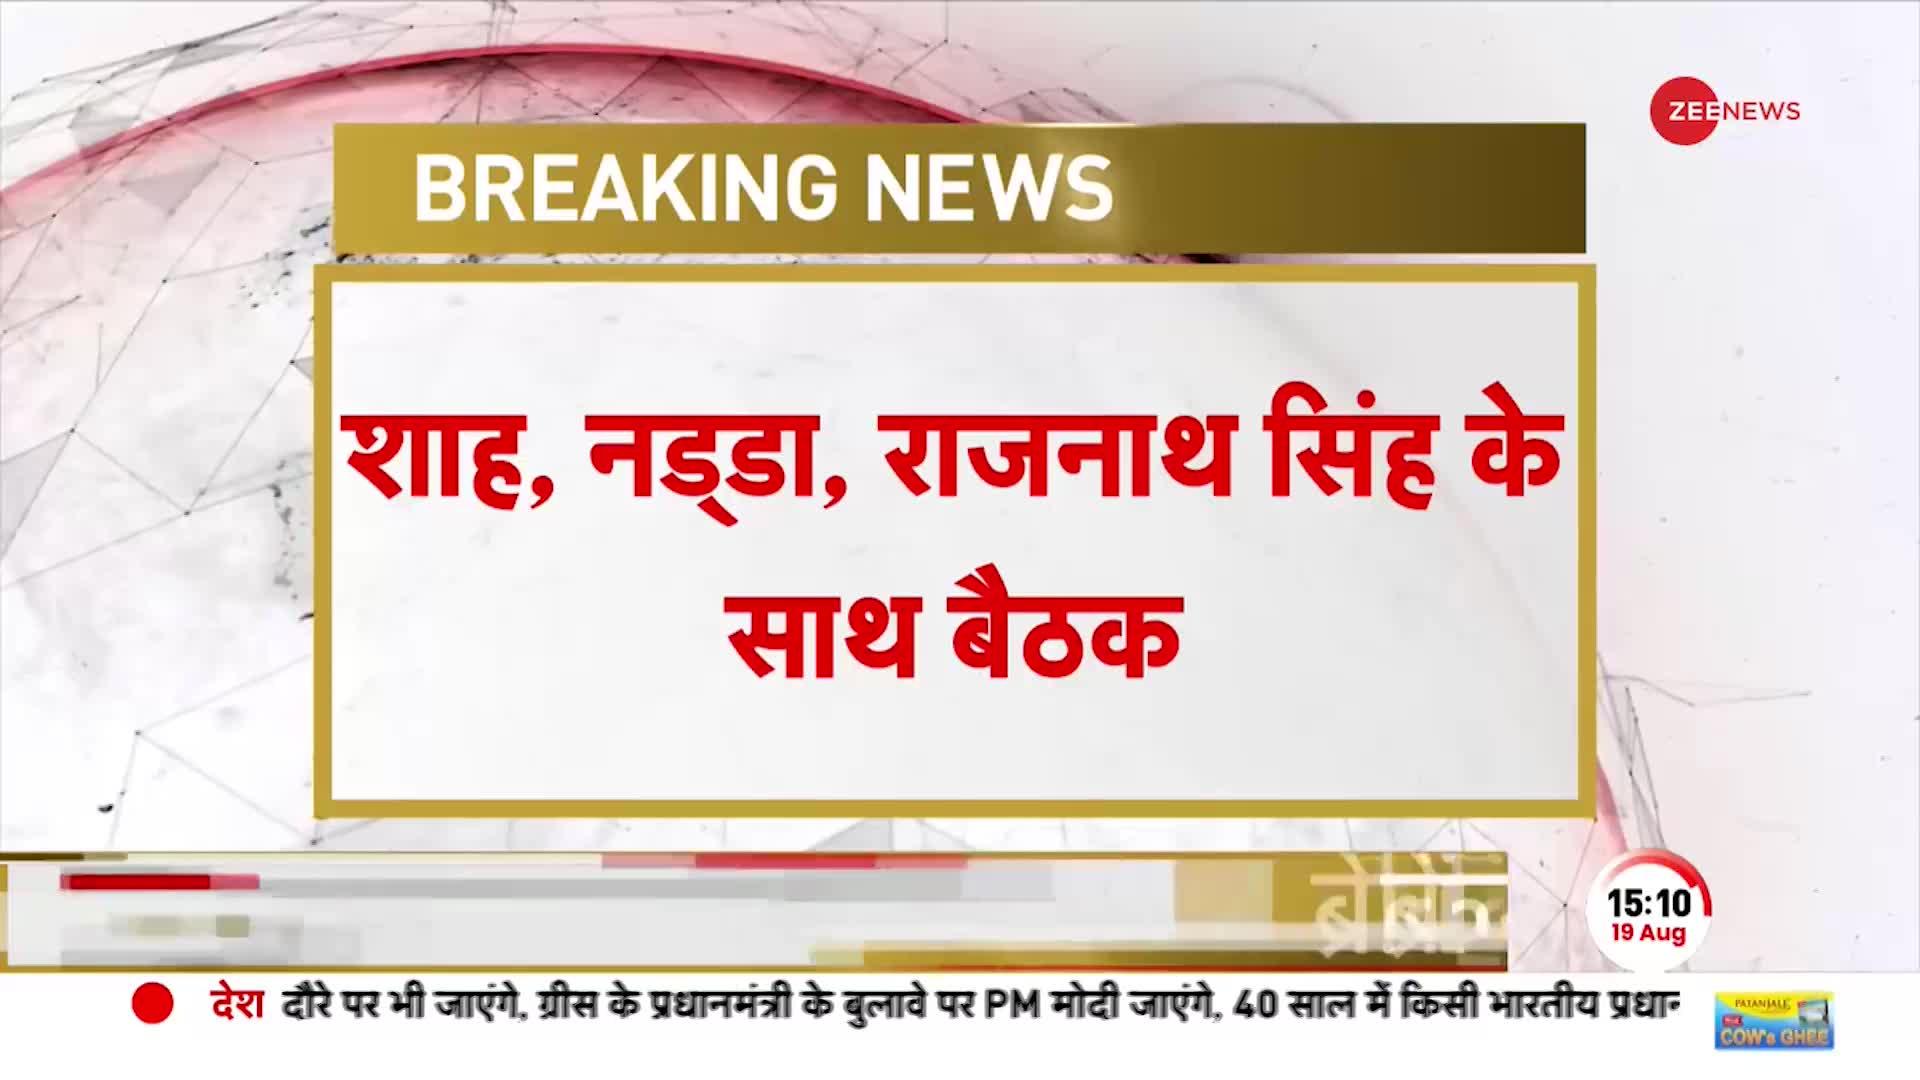 Breaking News: हिमाचल प्रदेश की आपदा पर PM मोदी की अहम बैठक, मीटिंग में अमित शाह और नड्डा भी मौजूद